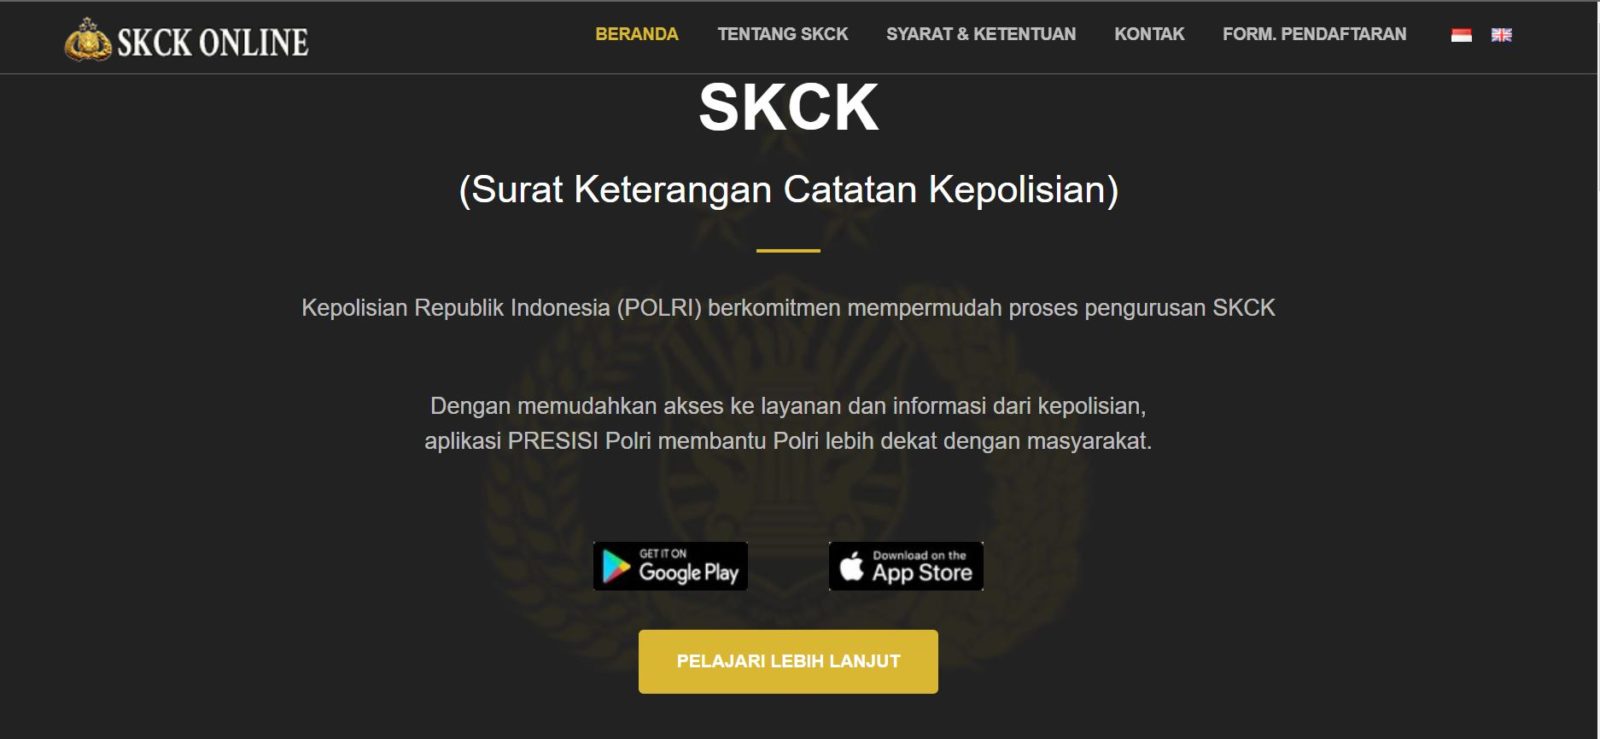 SKCK Online